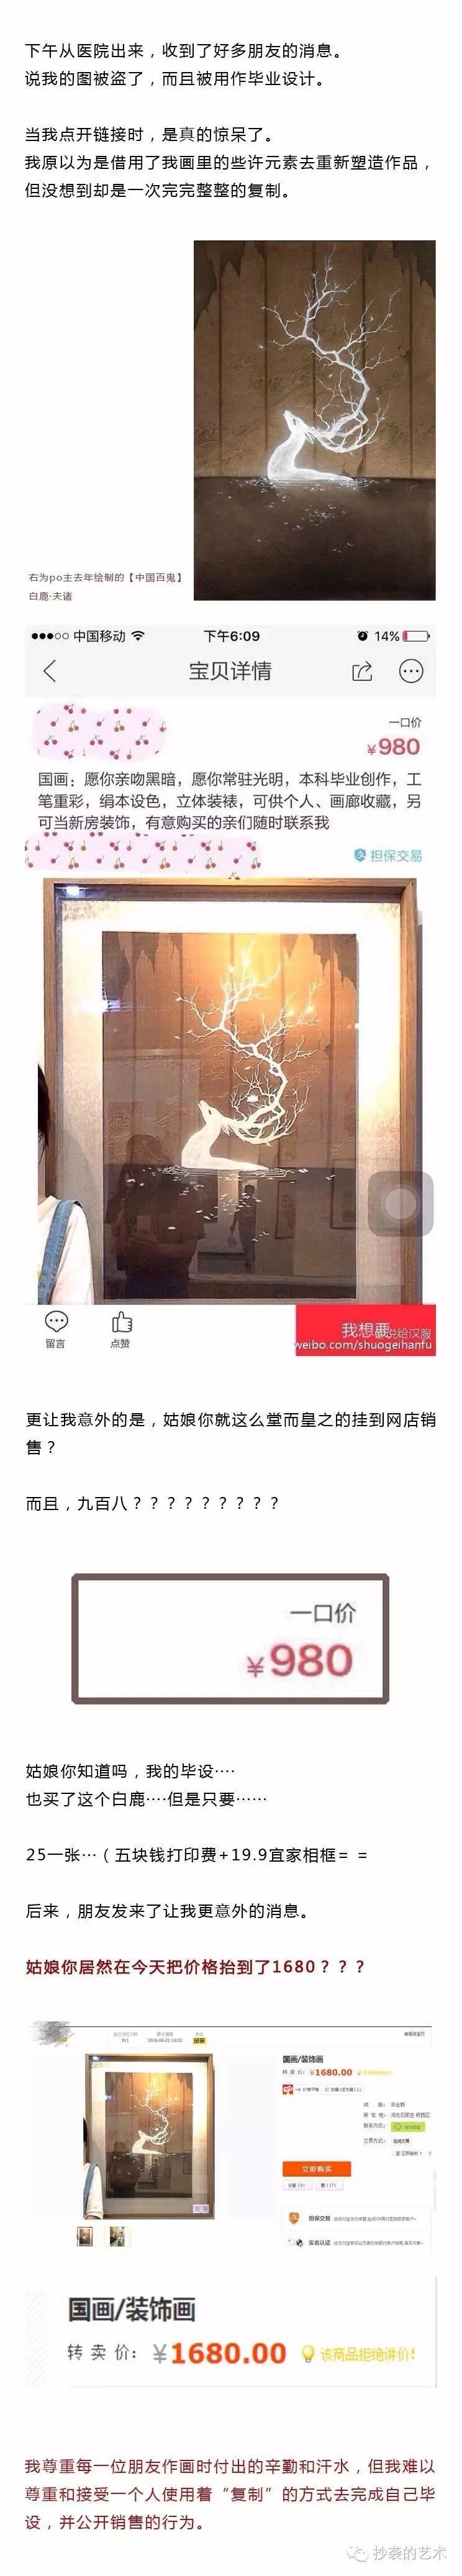 （库存）美院毕业展频出抄袭，中国美术教育不要脸！